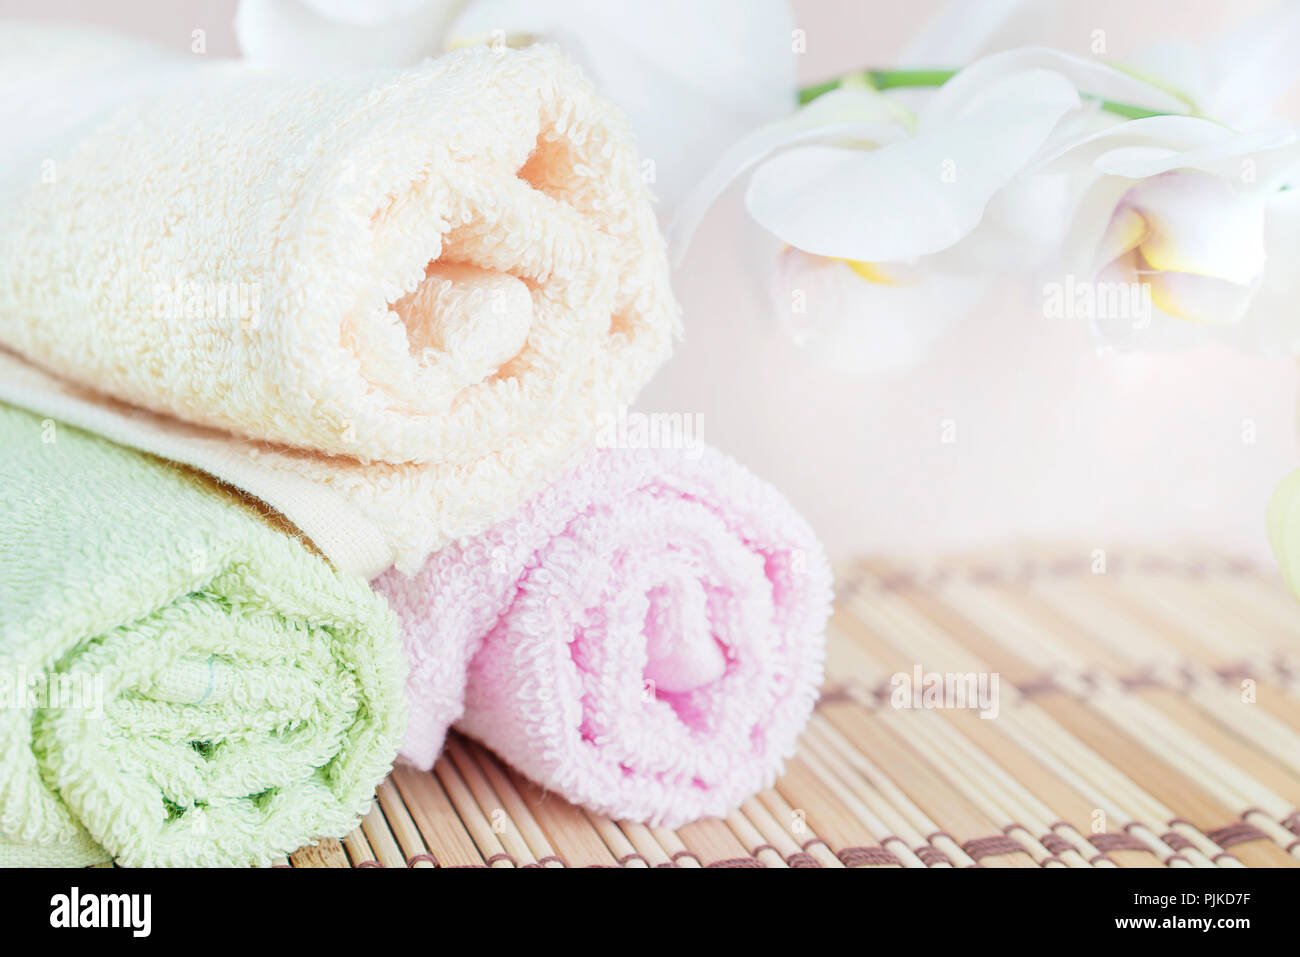 Concepto Spa: toallas de baño y una rama de orquídeas blancas, con espacio para texto Foto de stock